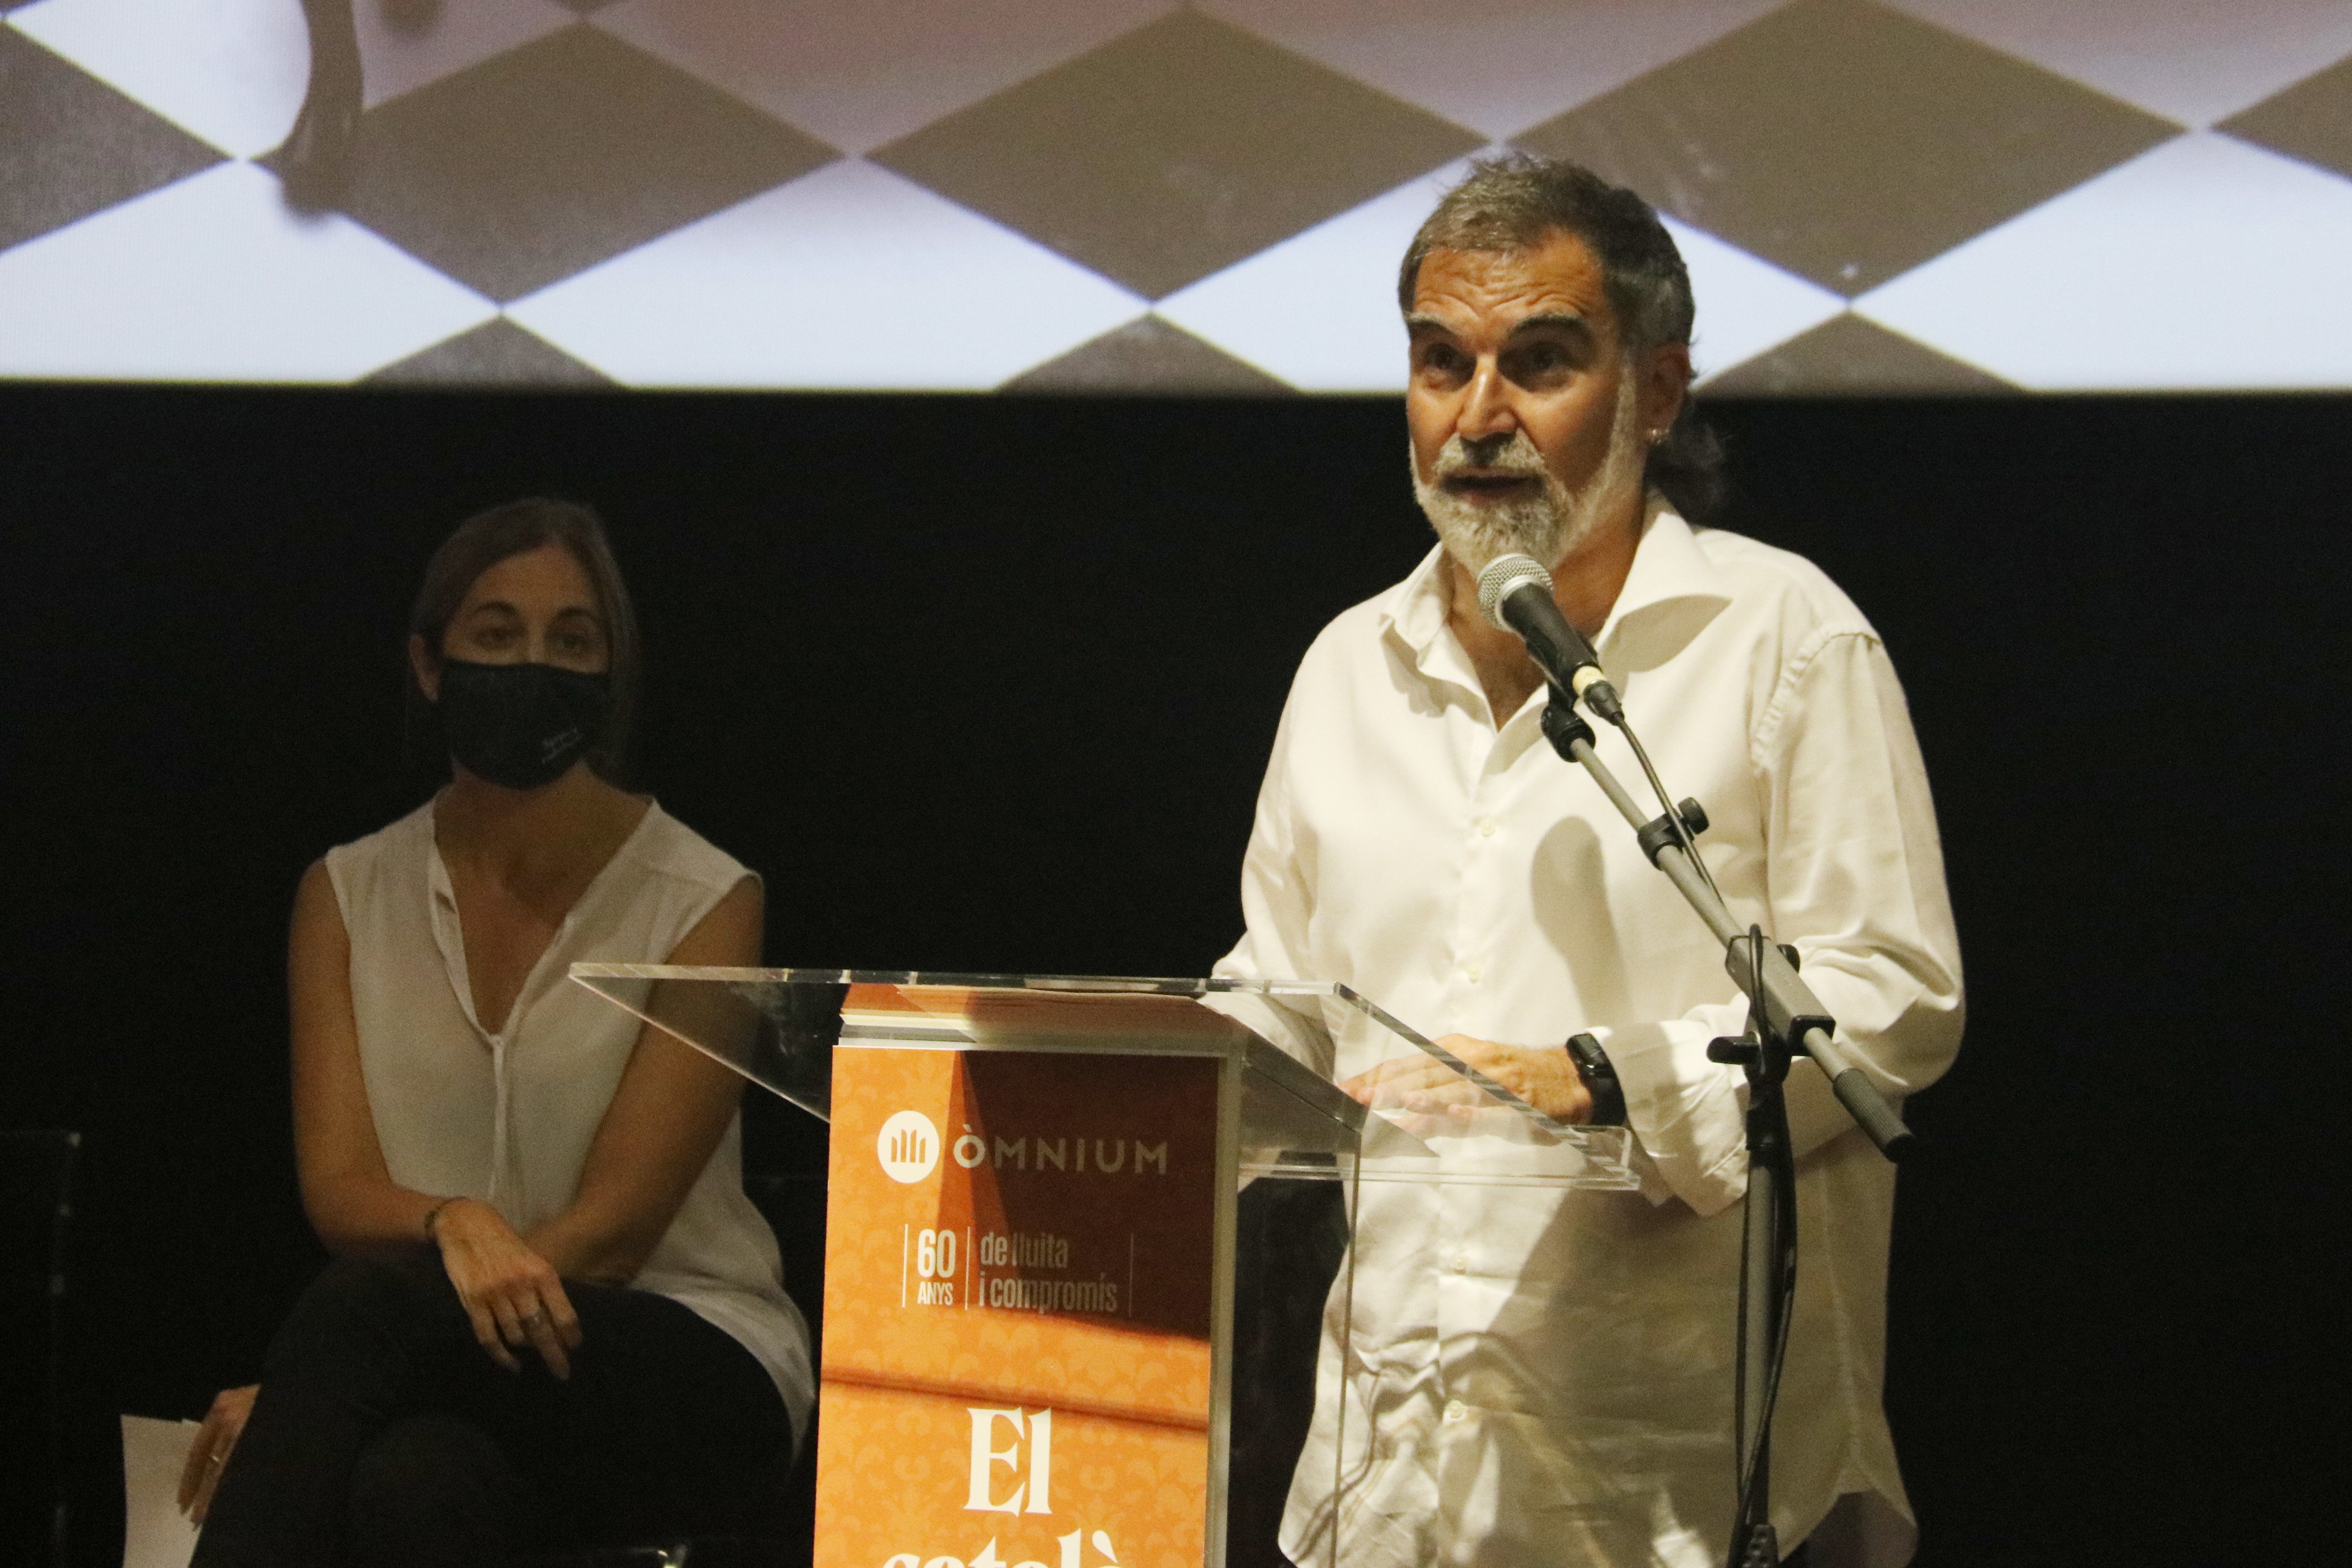 Òmnium planta cara a los ataques contra el catalán con una pila de actuaciones